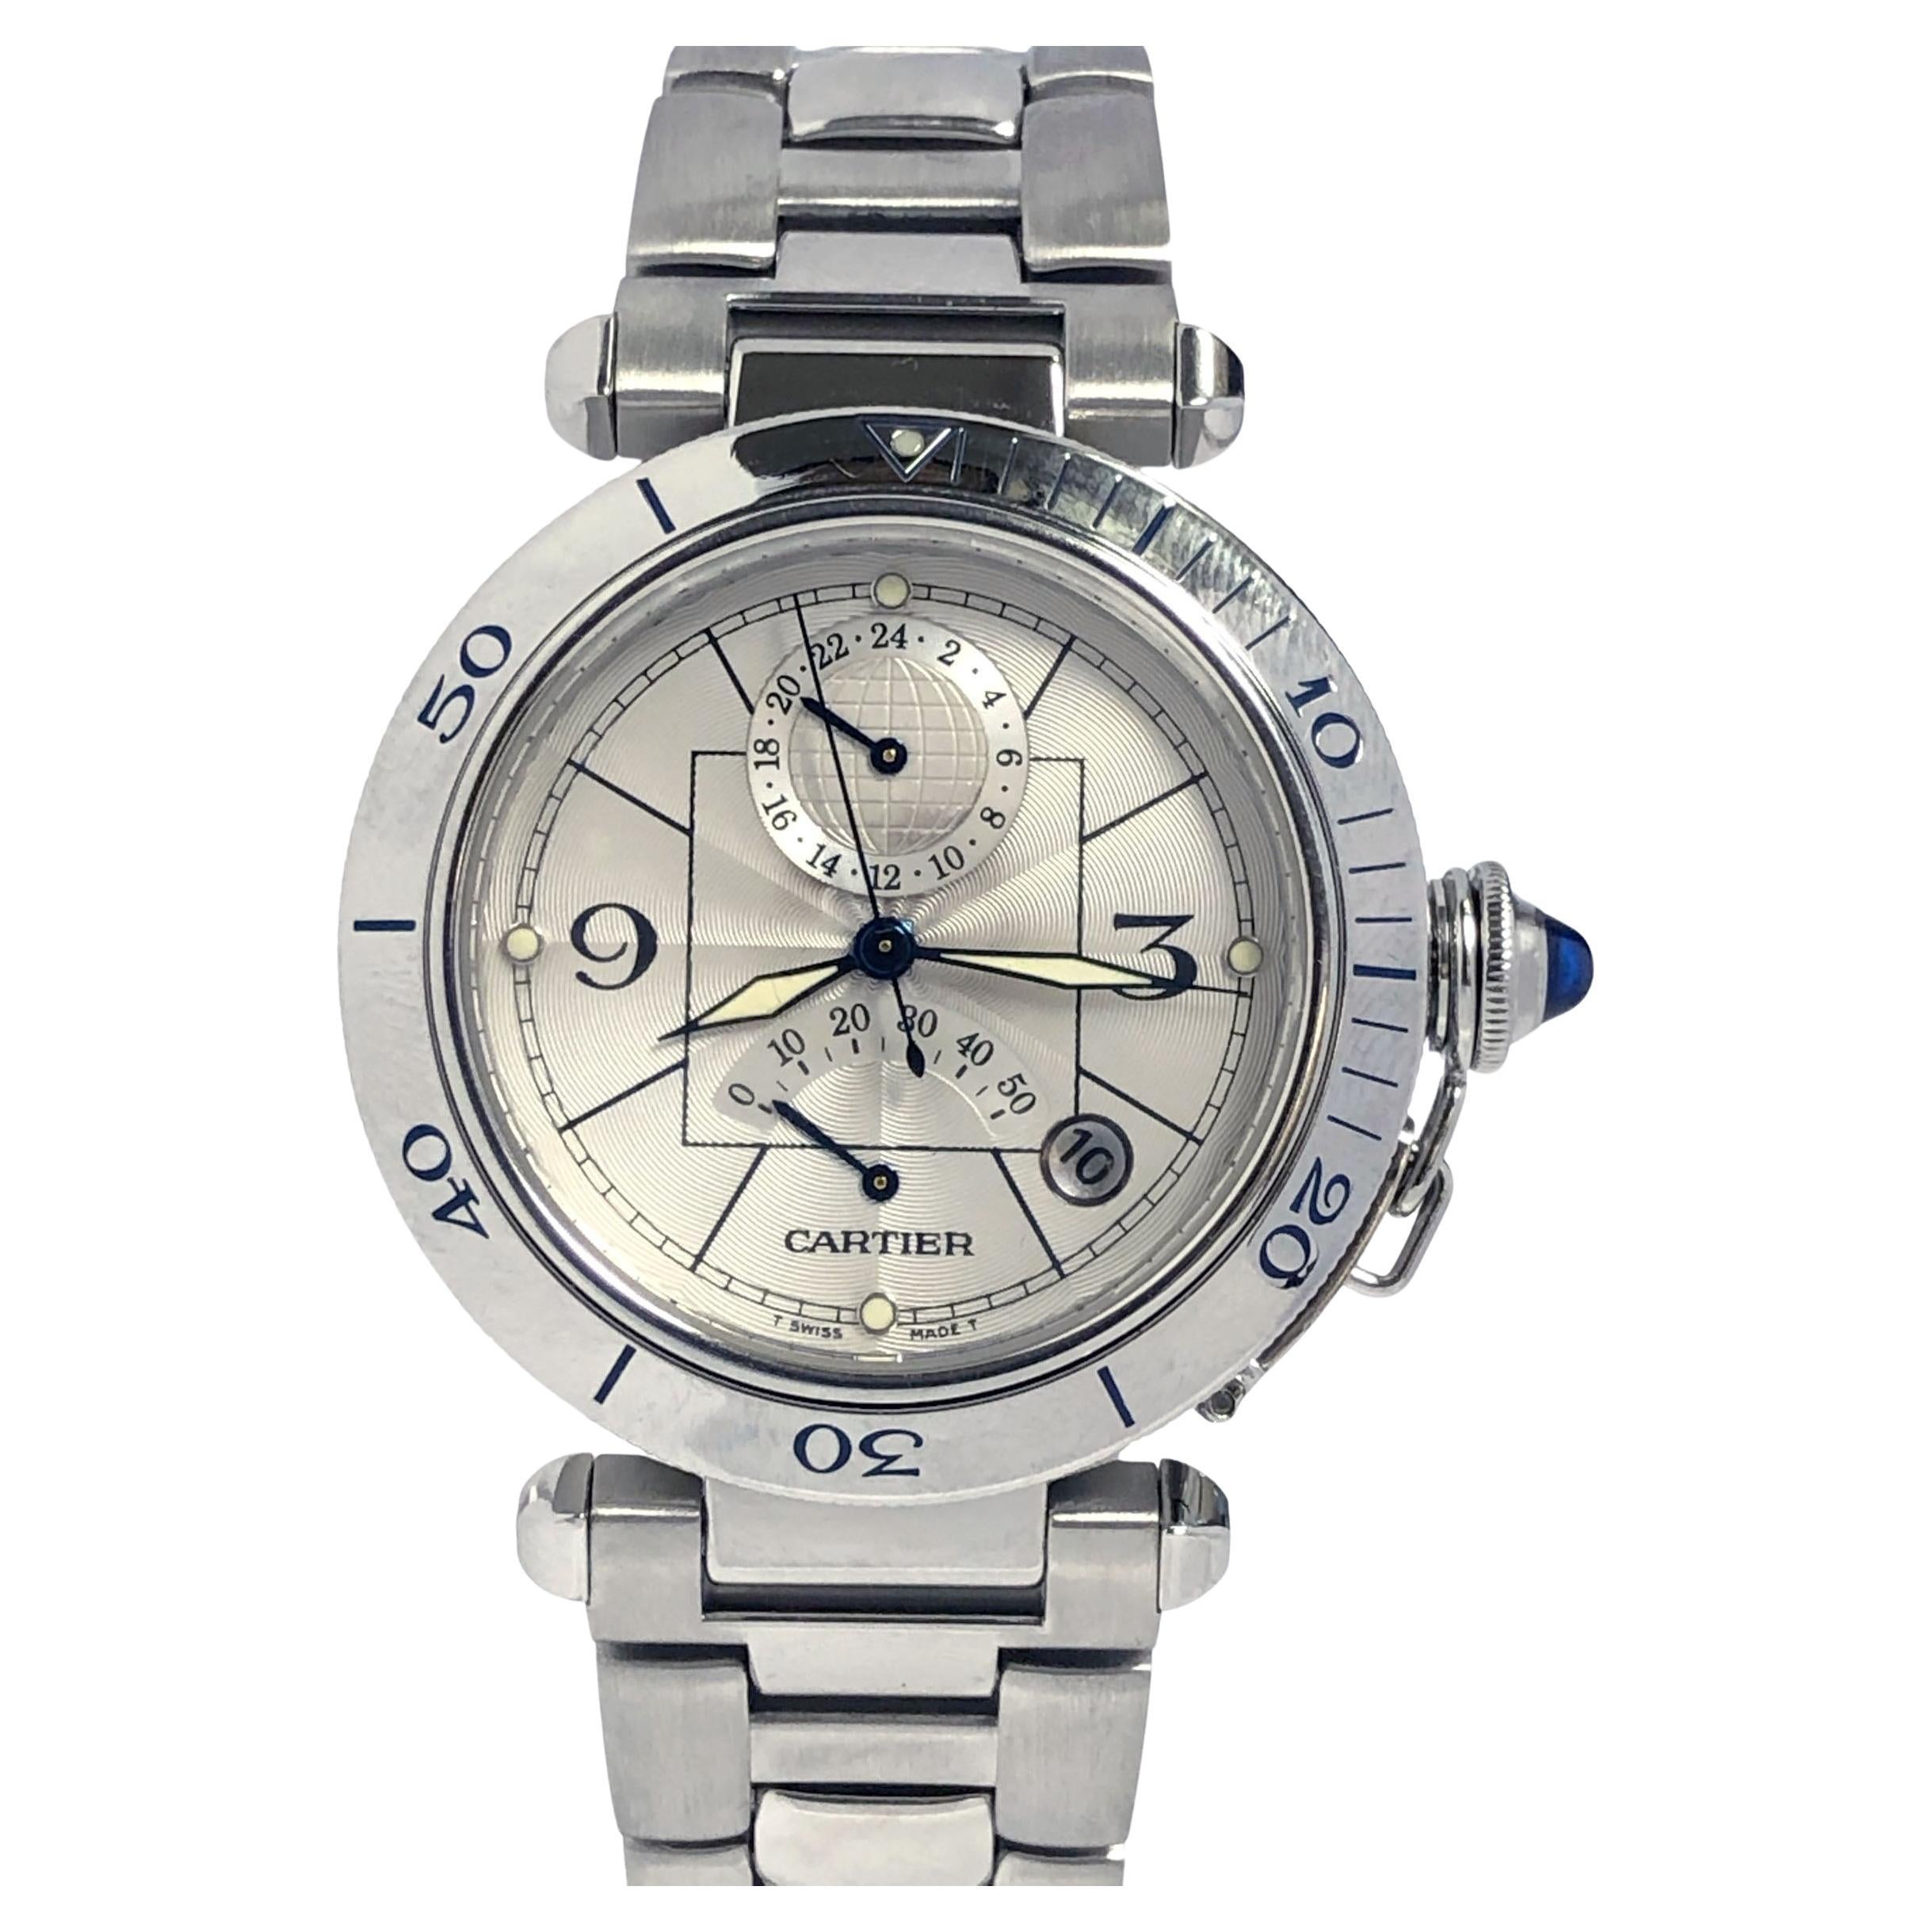 Cartier Ref 2388 Automatic Power Reserve Calendar Steel Wrist Watch 